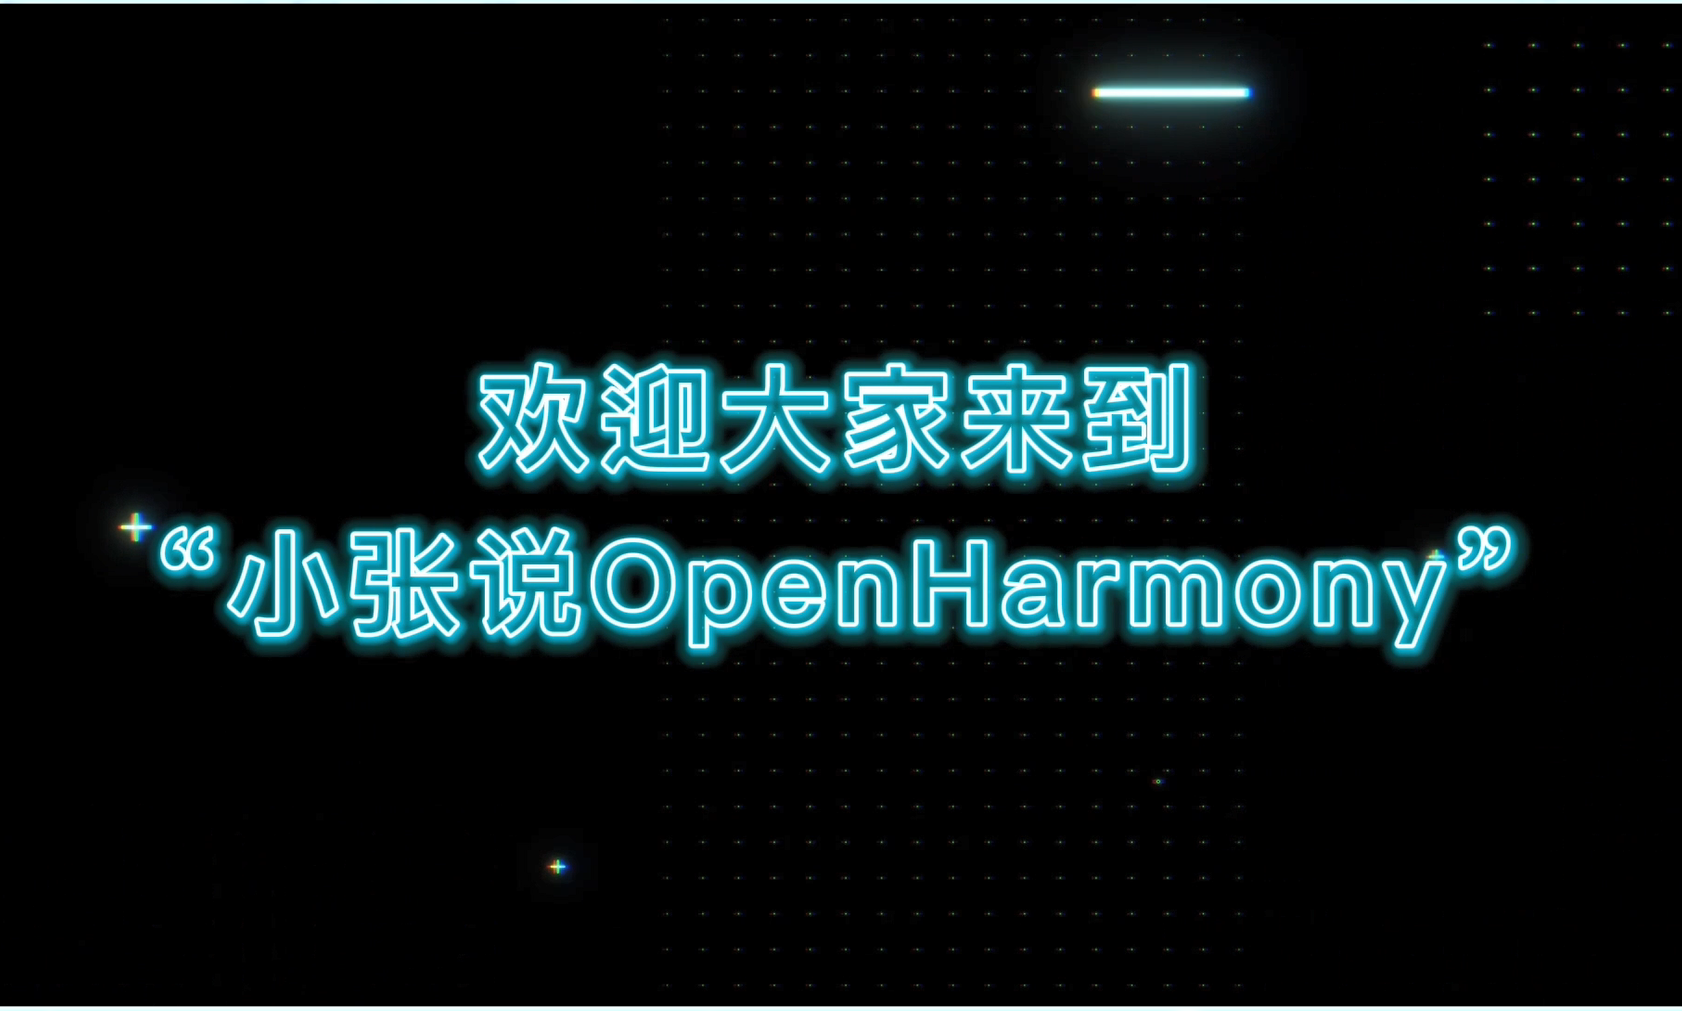 干货分享4 | 瑞迅科技『小张说OpenHarmony』系列乘风而来！速来围观#鸿蒙 #HarmonyOS 